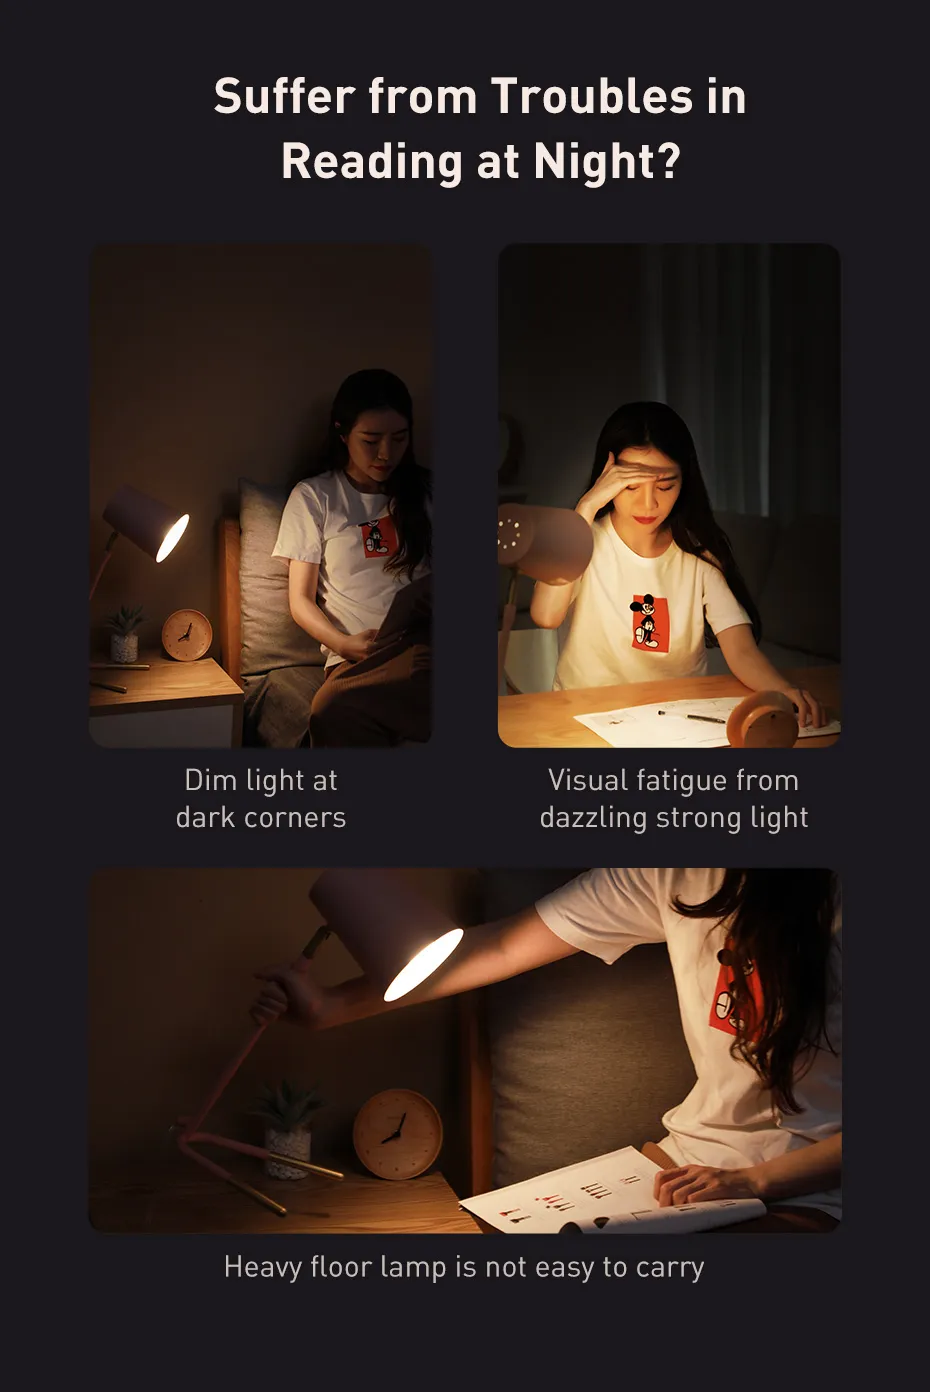 Thấy hay hay nên share cho anh em: Đèn LED mini không dây Baseus để đọc sách hay làm việc ban đêm cực tiện